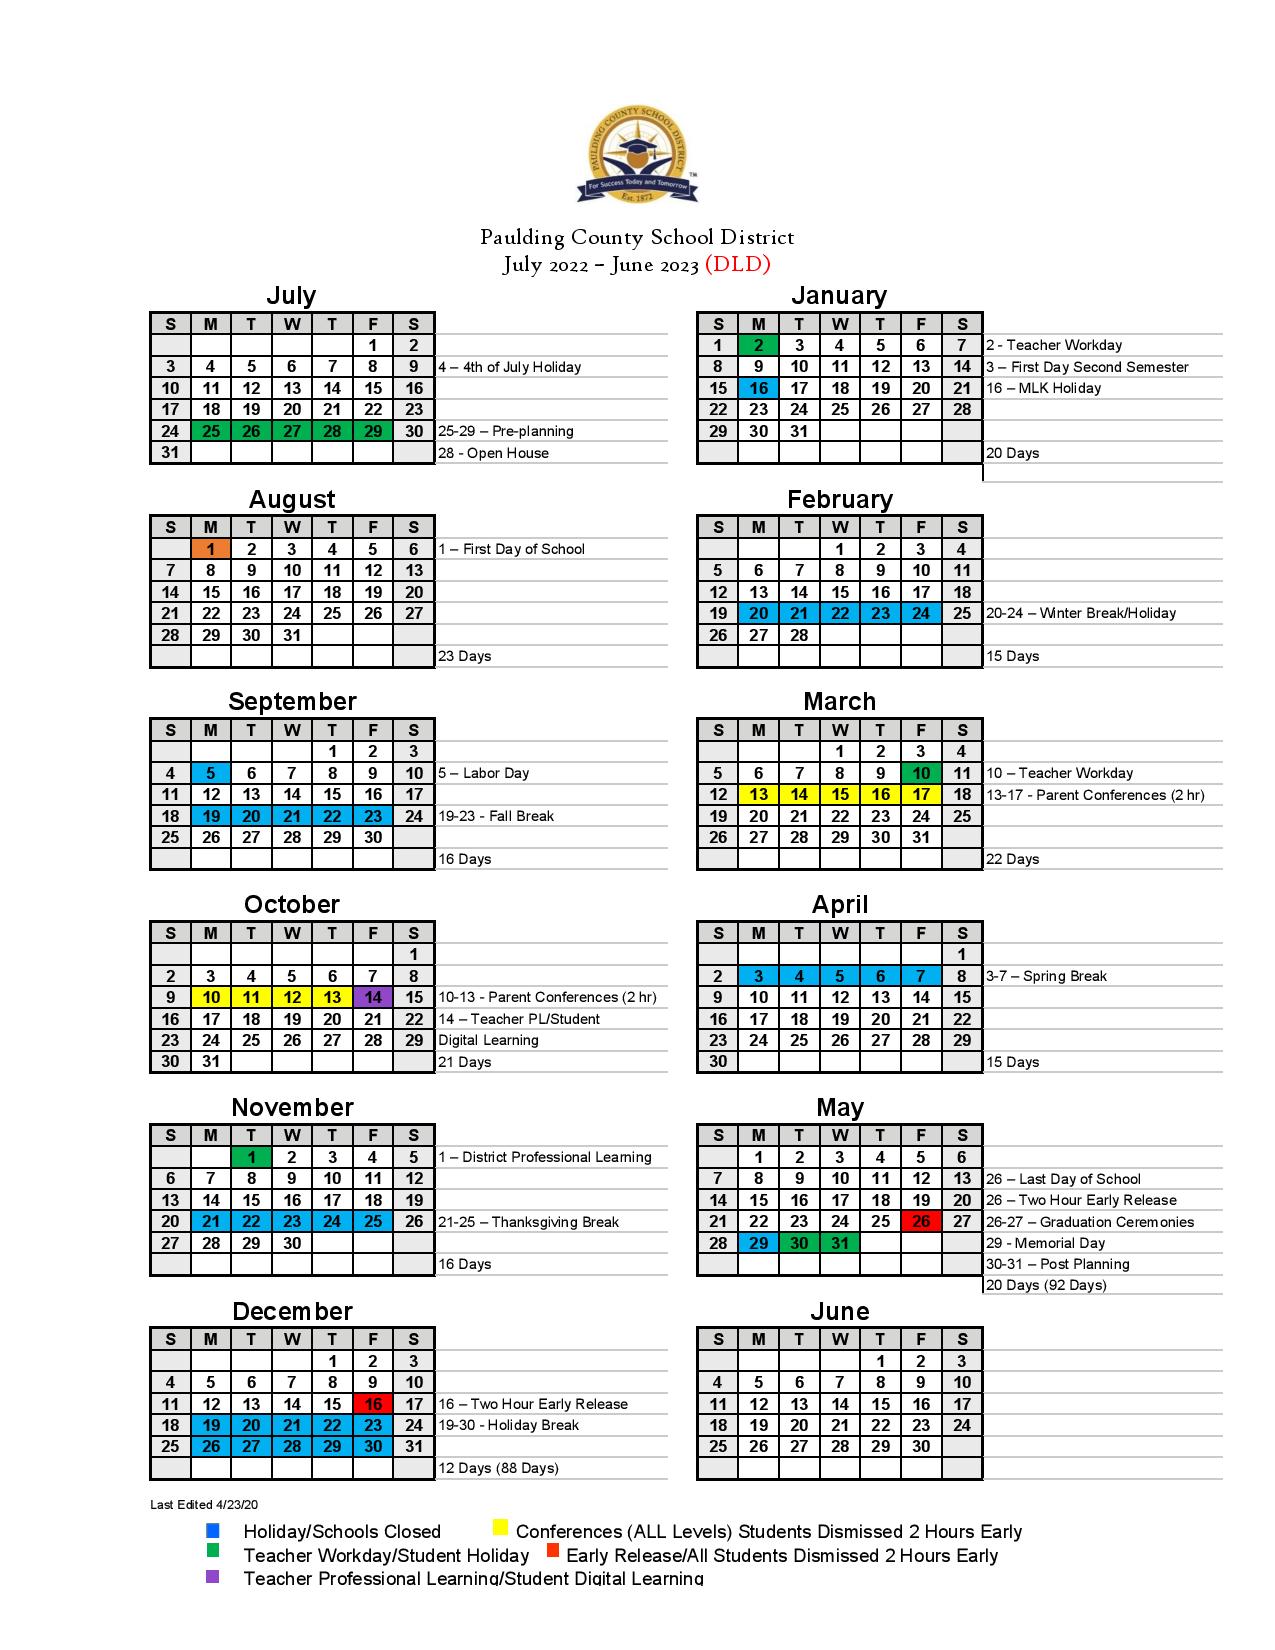 Paulding County School District Calendar 2022-2023